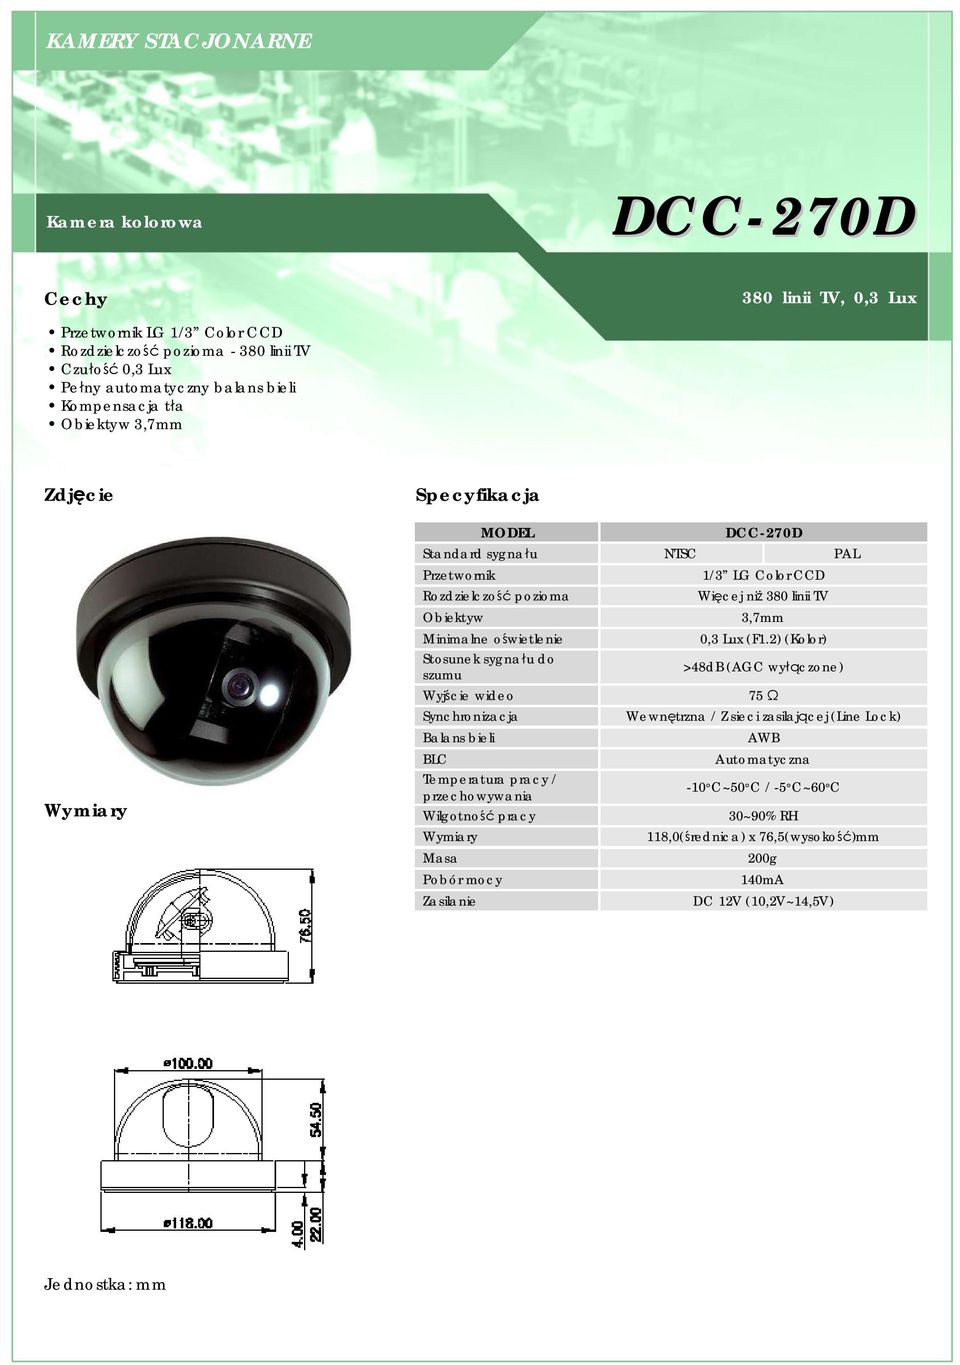 Obiektyw Wyjście wideo BLC / przechowywania 1/3 LG Color CCD Więcej niż 380 linii TV 3,7mm 0,3 Lux (F1.